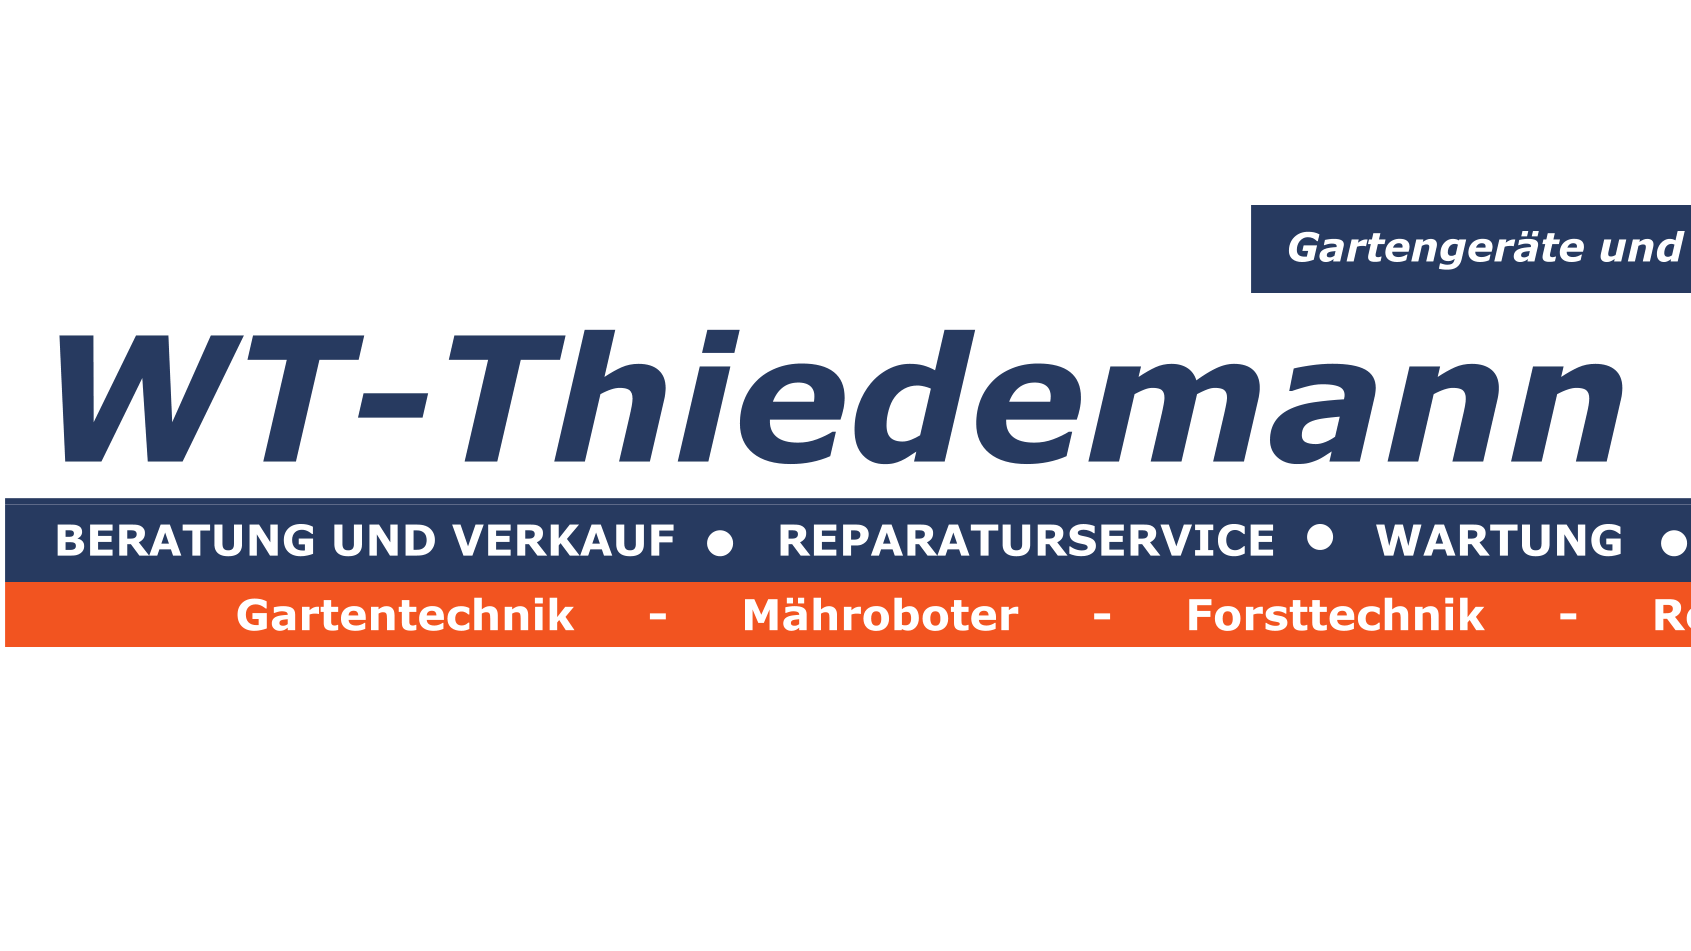 Kundenbild groß 1 Die Gartengeräteprofis - WT-Thiedemann GmbH - Gartengeräte & Reparaturwerkstatt